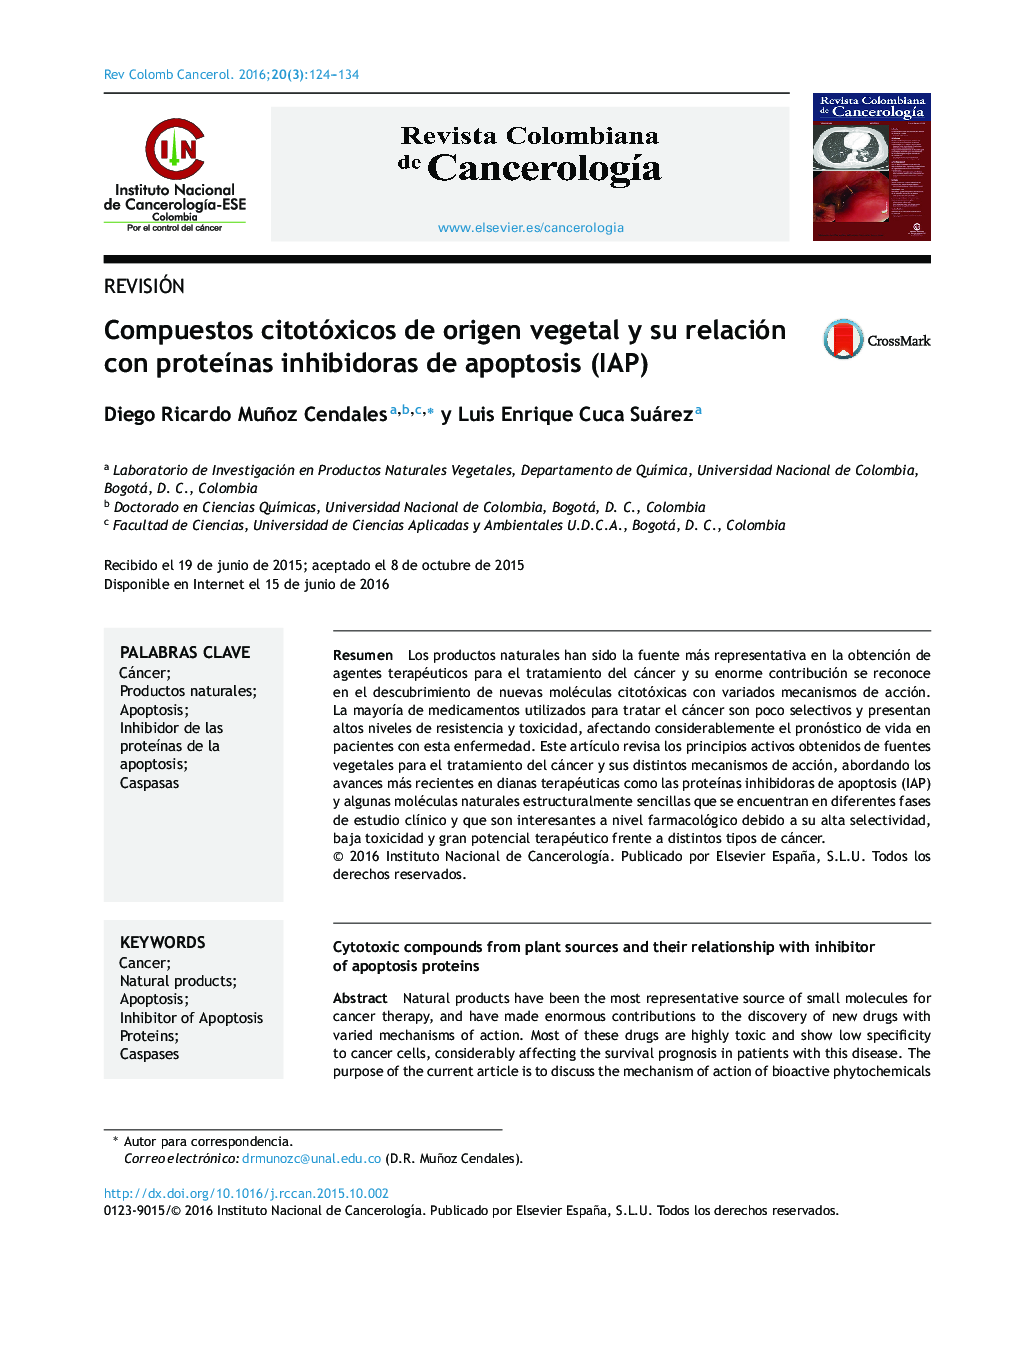 Compuestos citotóxicos de origen vegetal y su relación con proteÃ­nas inhibidoras de apoptosis (IAP)